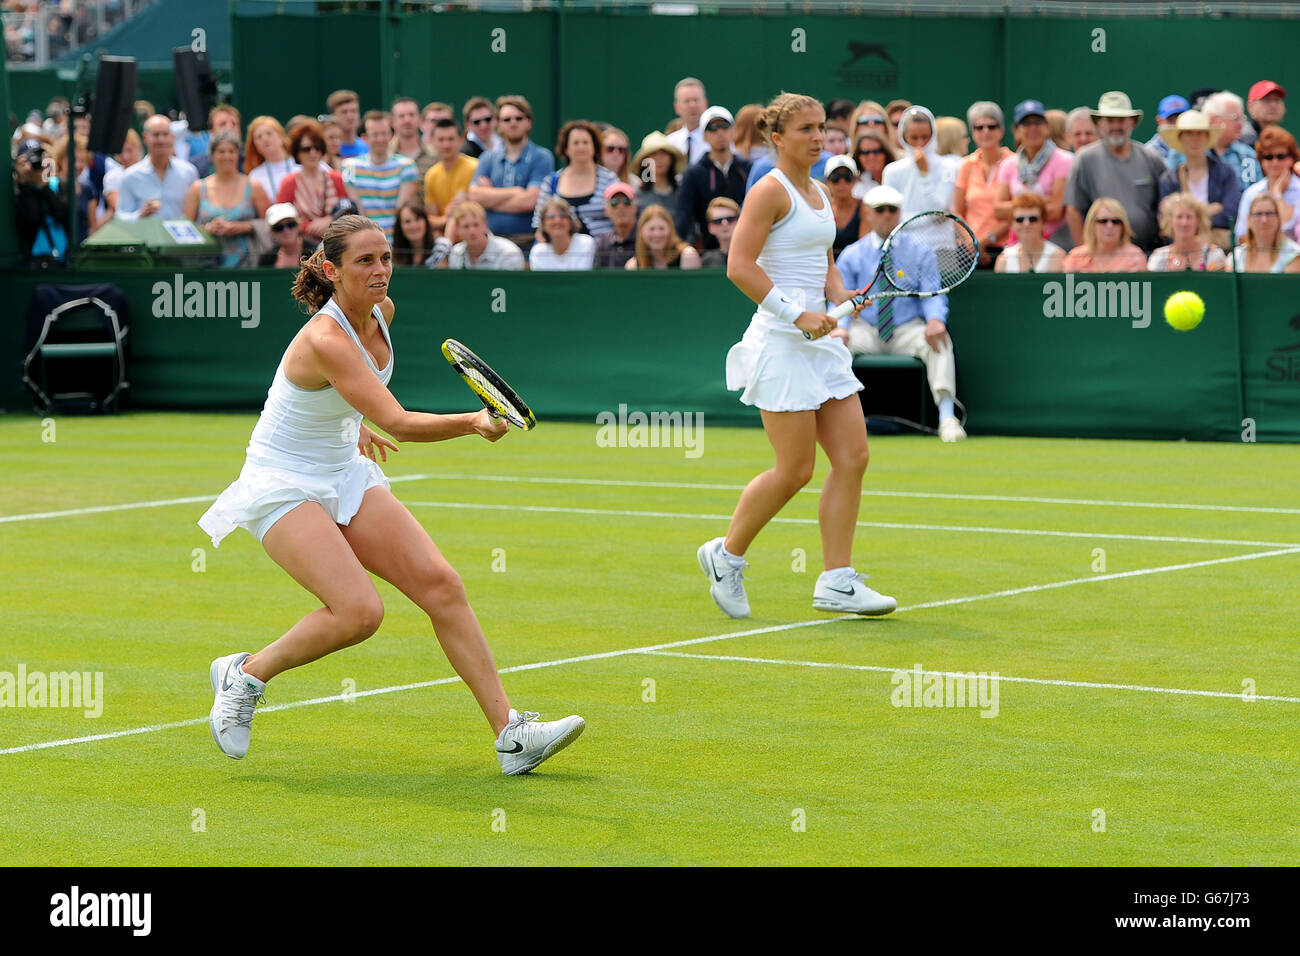 Tennis - Championnats de Wimbledon 2013 - troisième jour - le club de tennis et de croquet de pelouse de toute l'Angleterre.Roberta Vinci en Italie (à gauche) et Sara Errani lors de leur double match des dames contre Anne Keothavong et Johanna Konta en Grande-Bretagne Banque D'Images